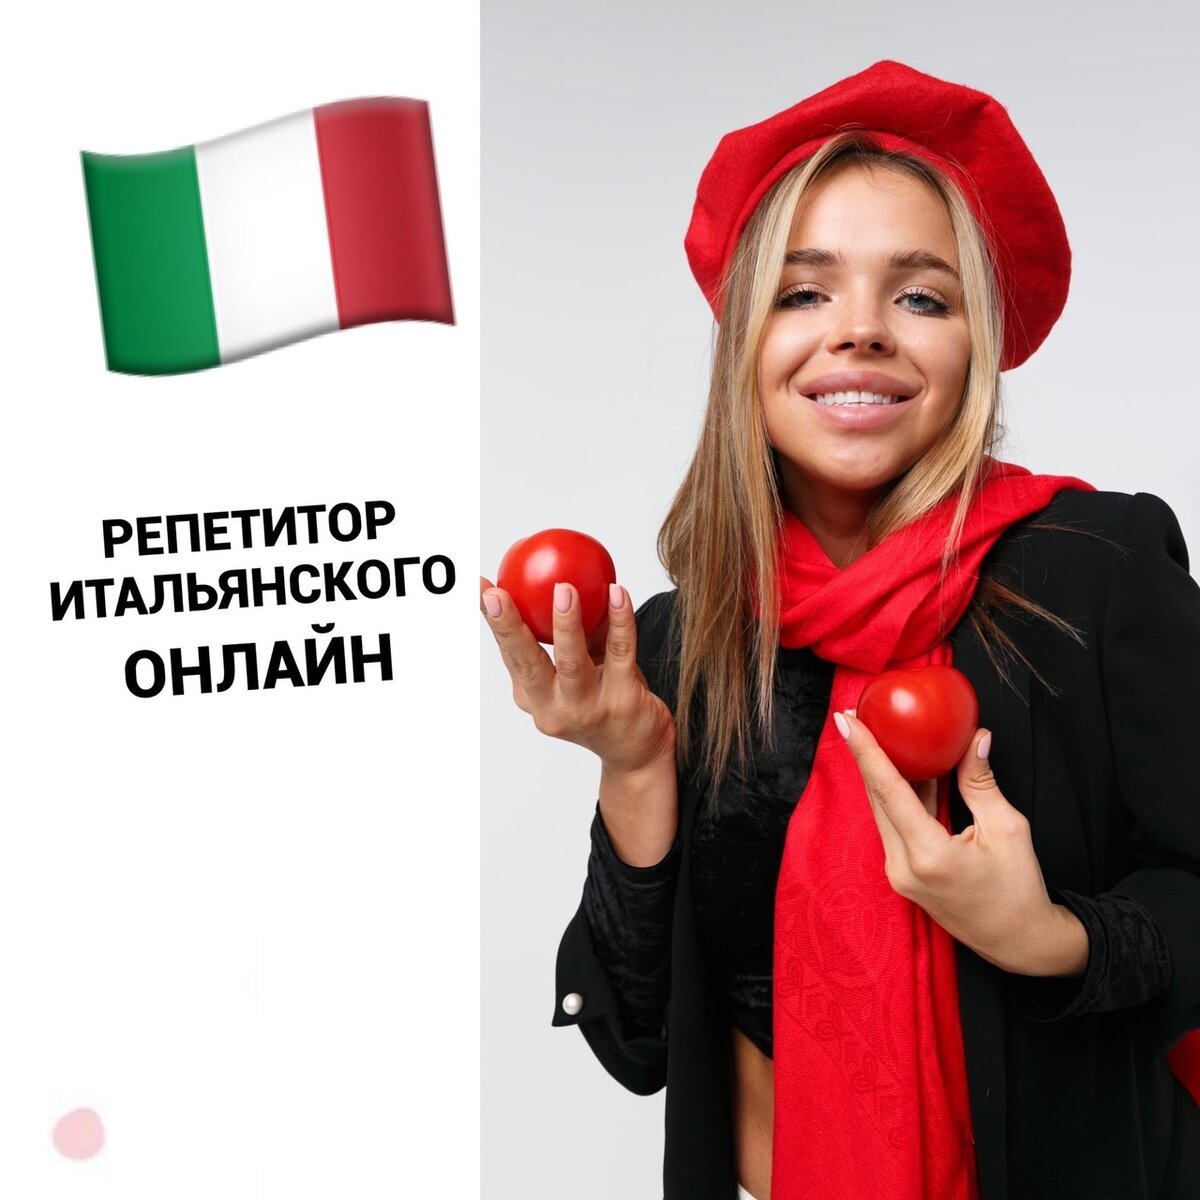 Языковые курсы итальянского онлайн для взрослых и детей в году